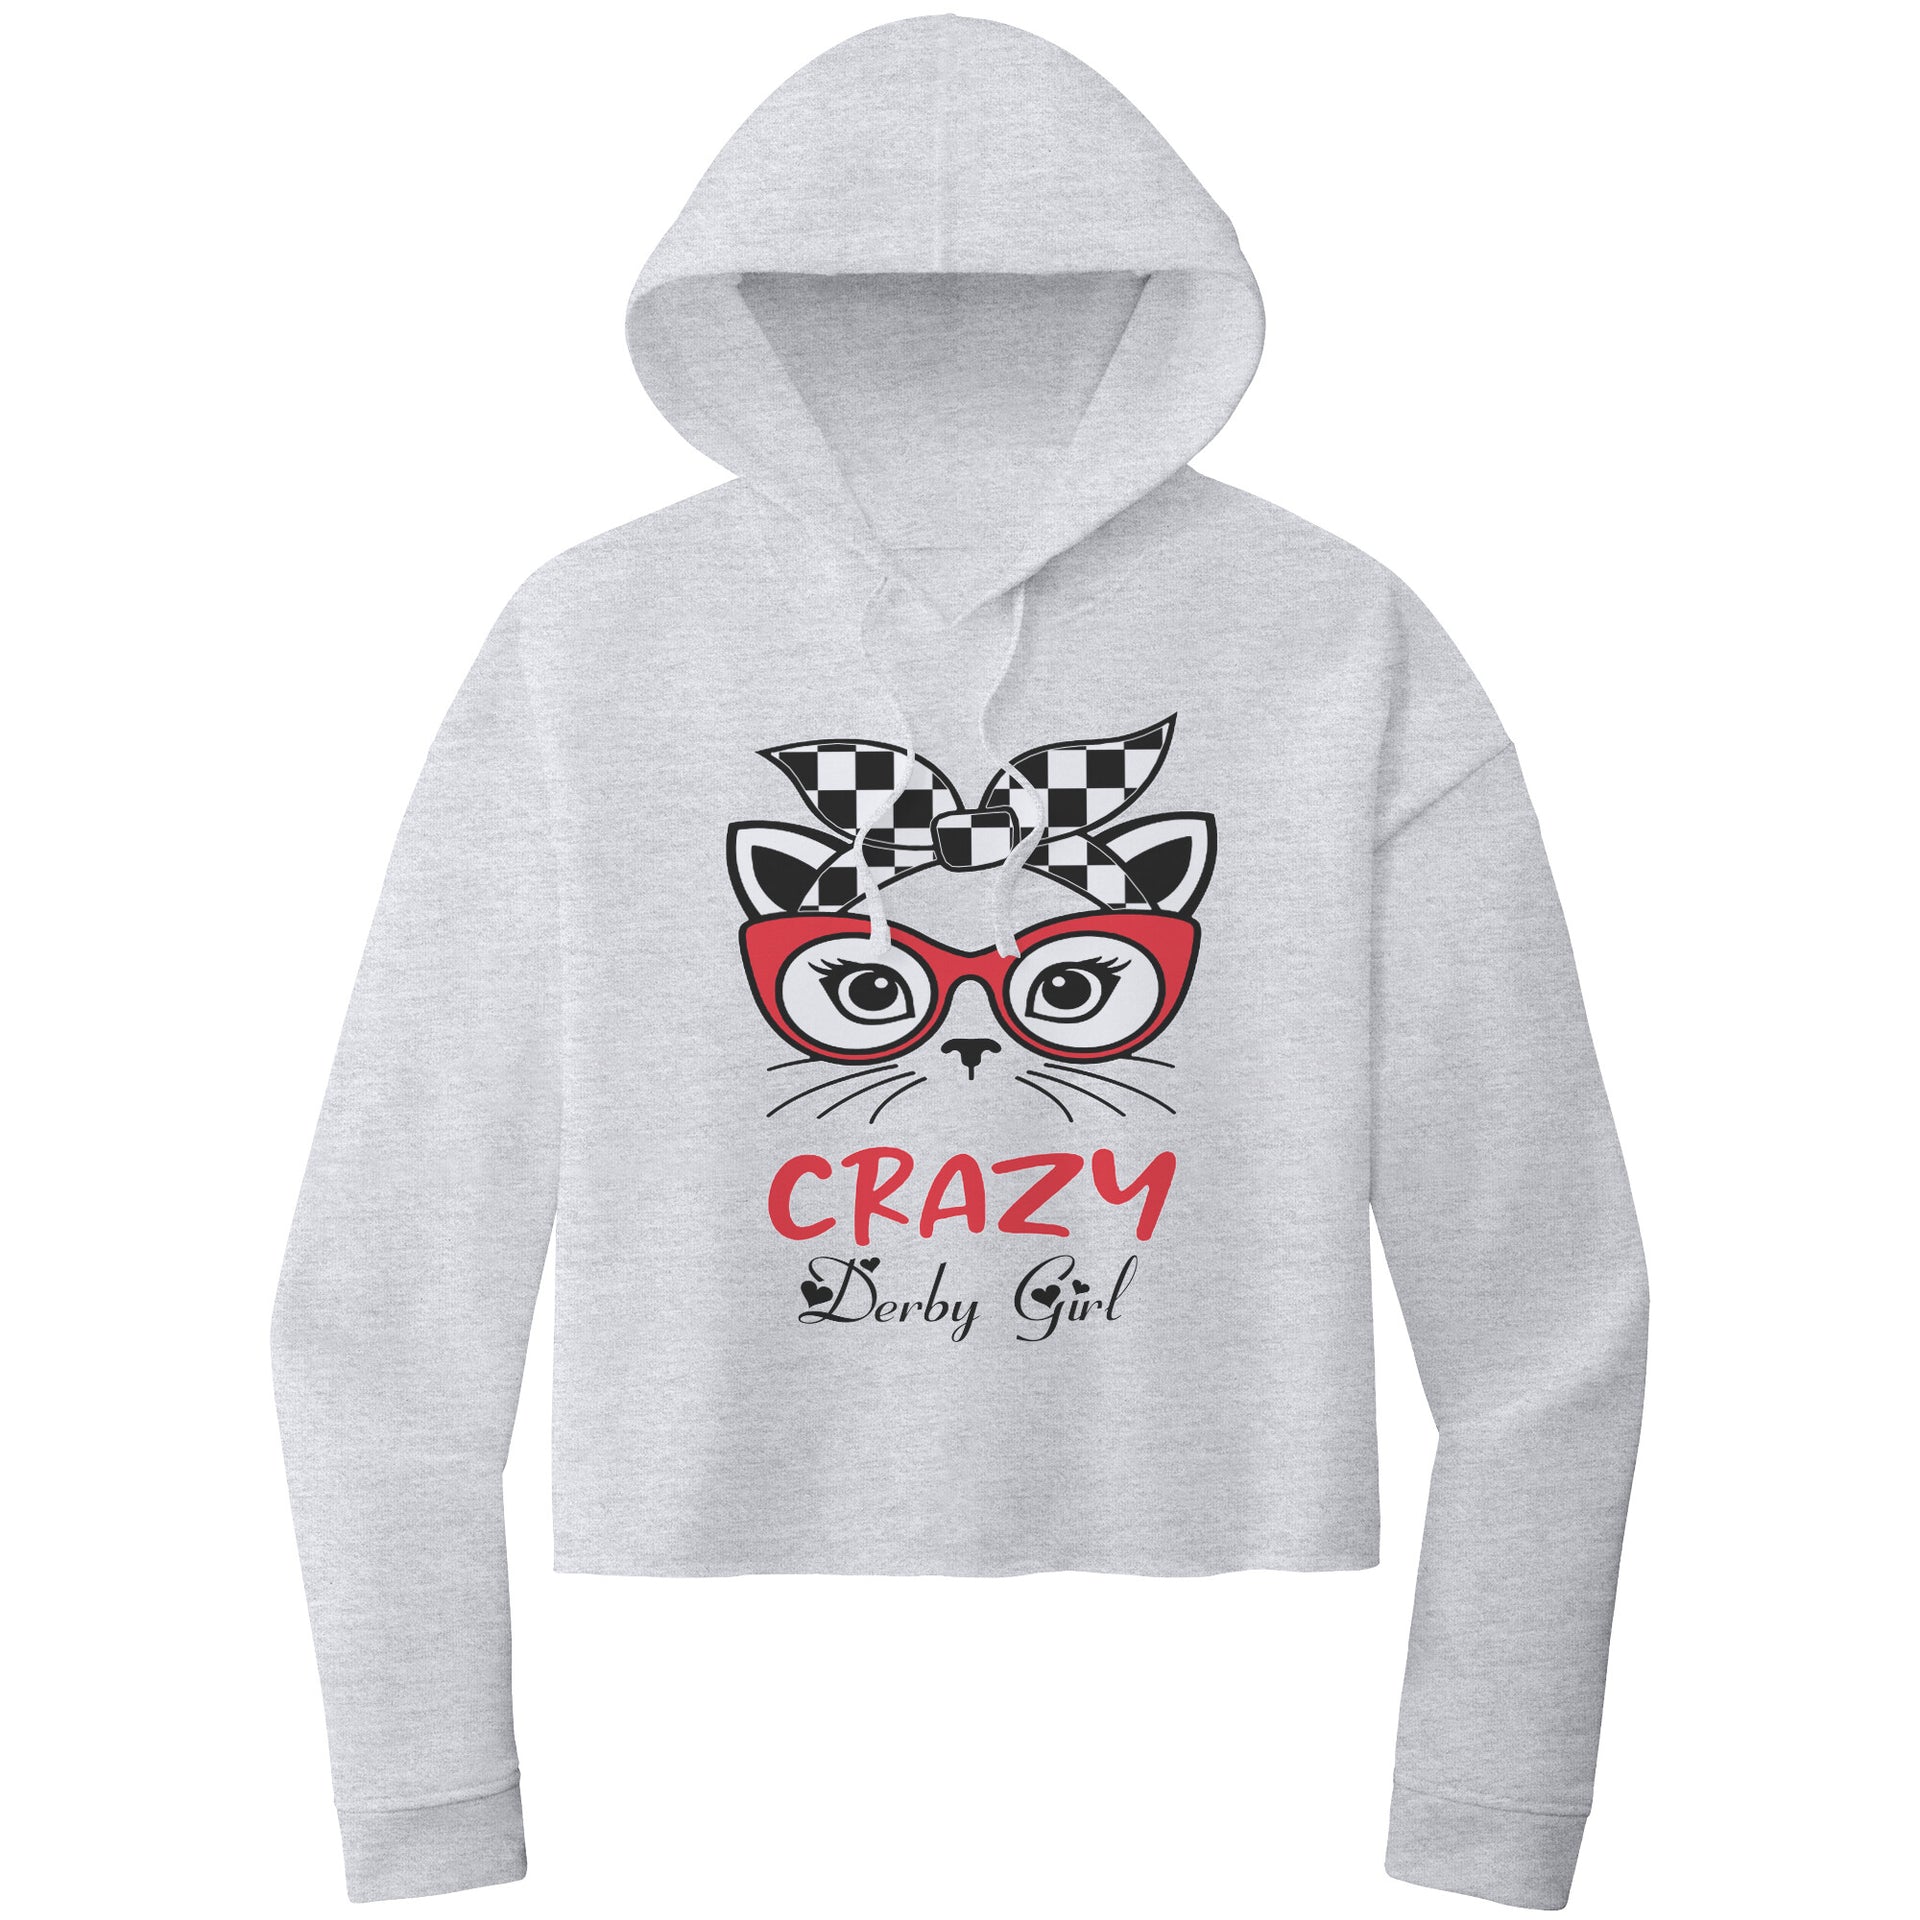 Crazy Derby girl Crop Top hoodie